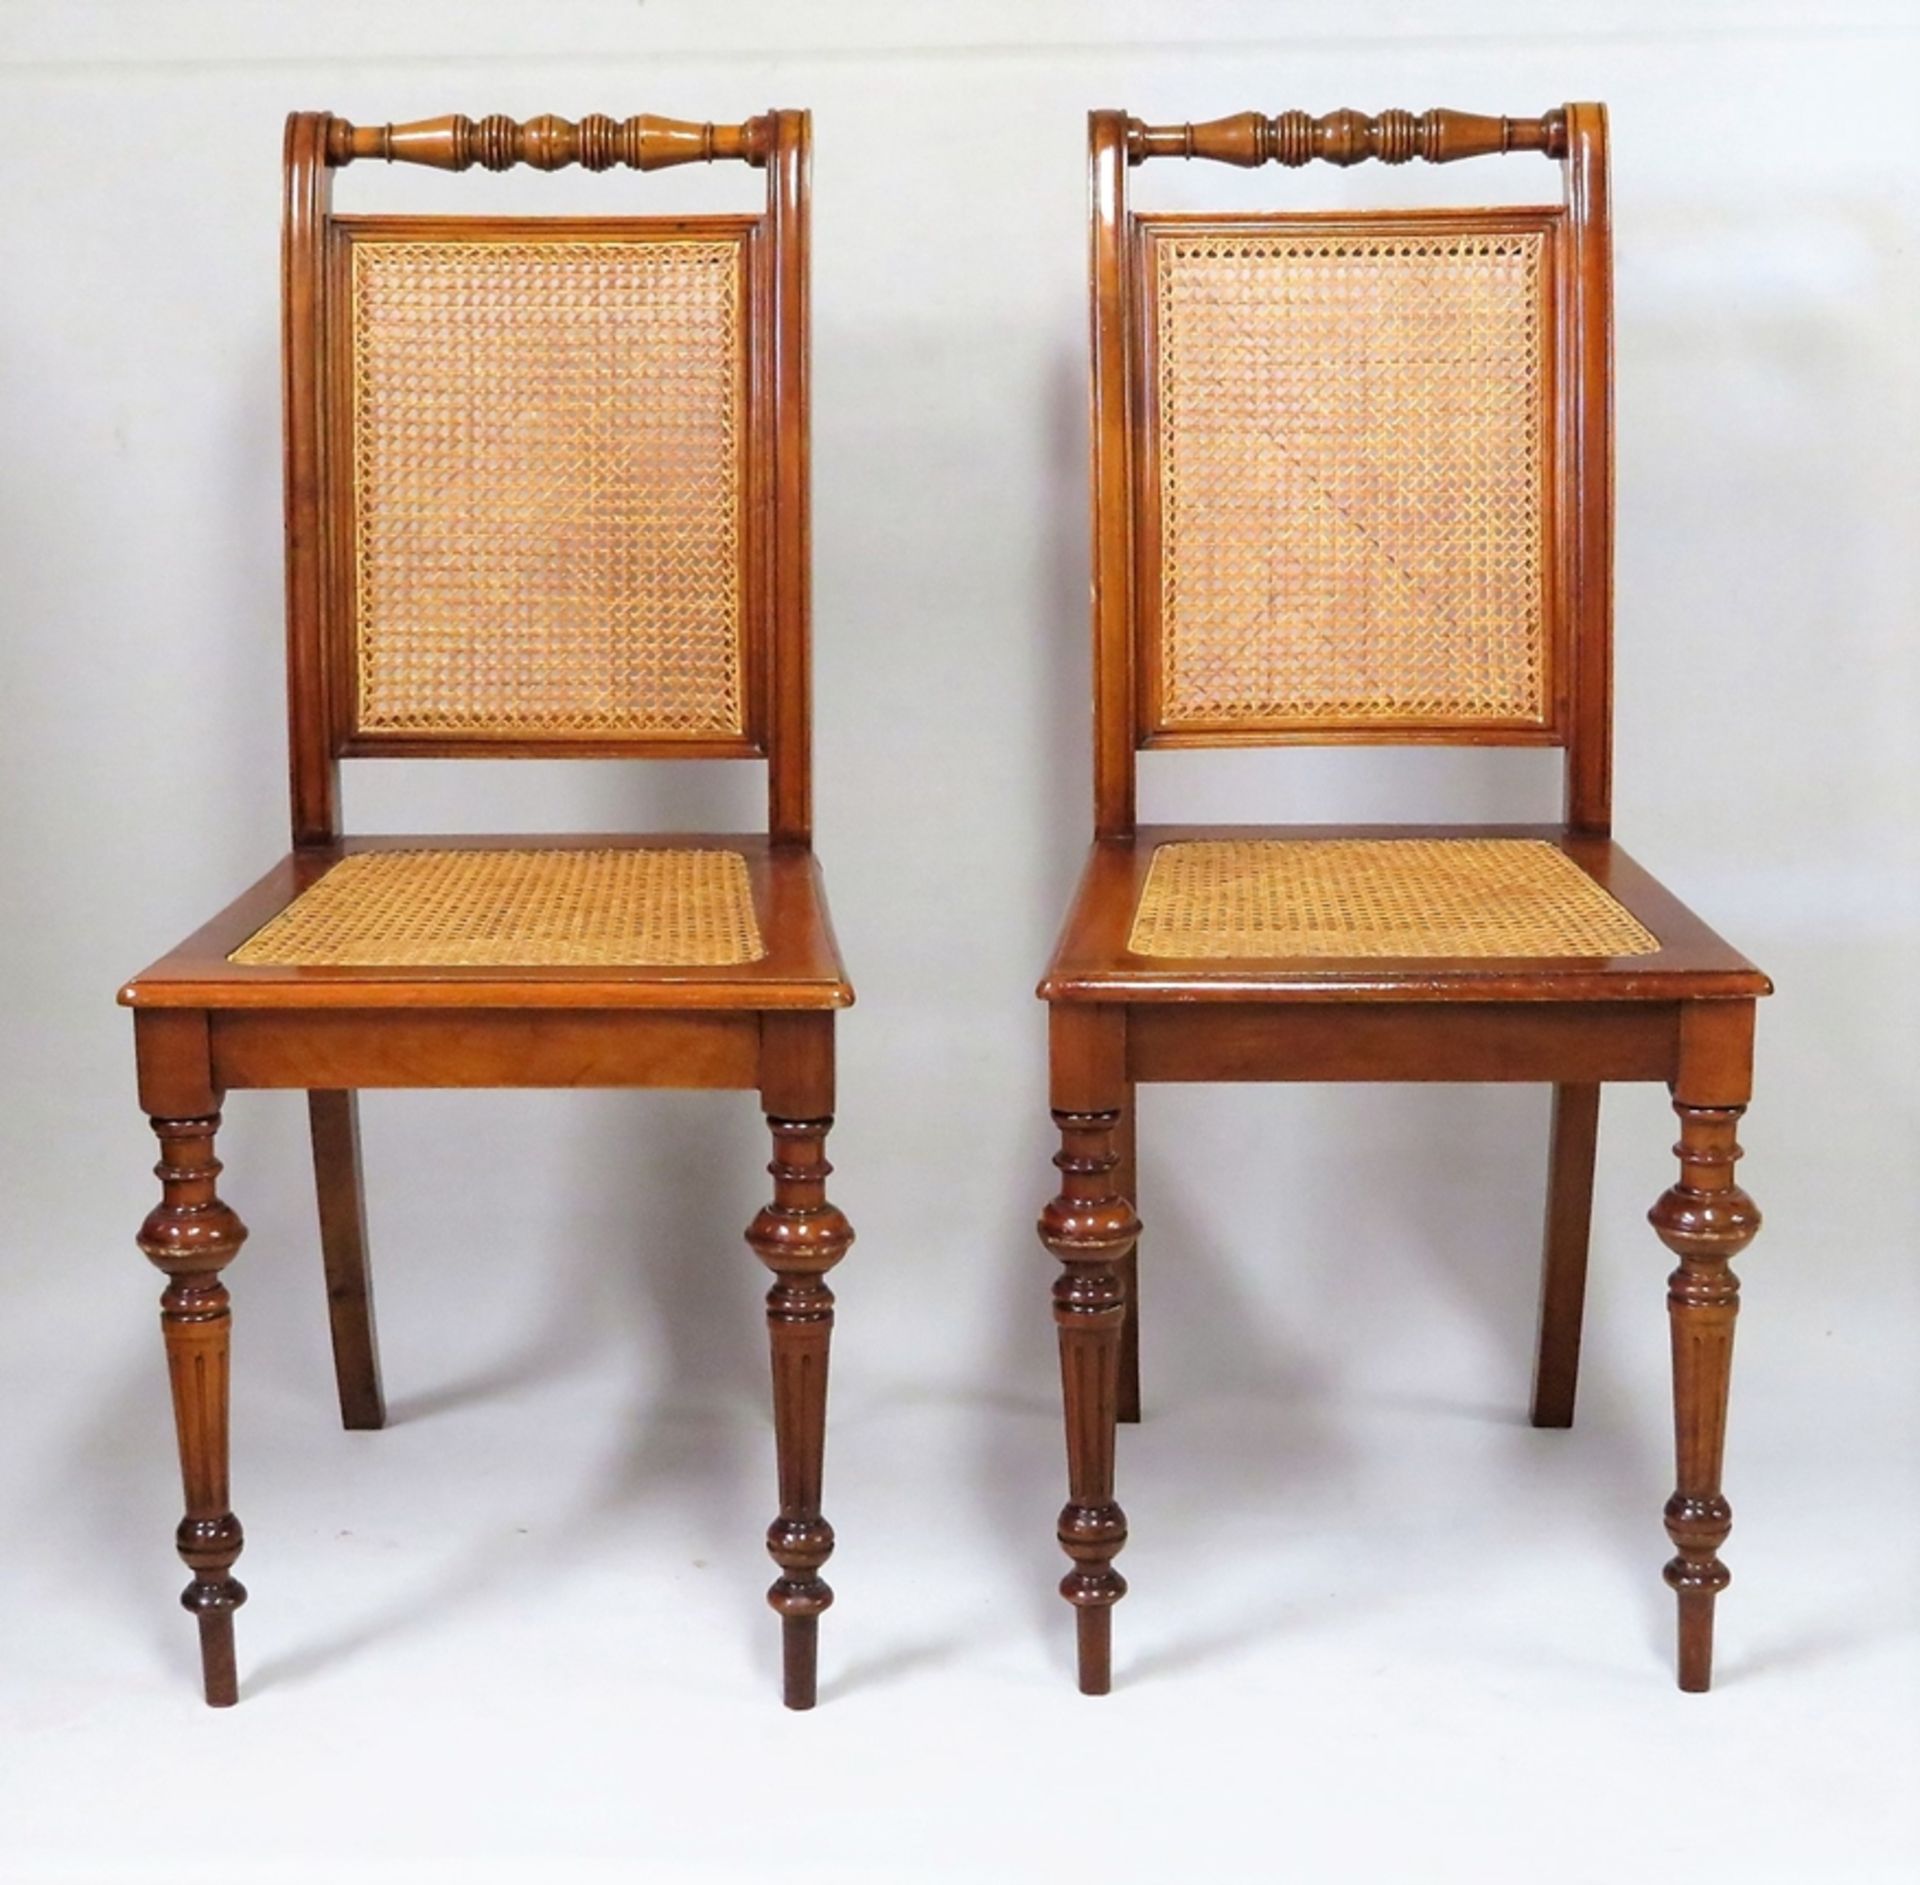 2 Stühle, Gründerzeit, um 1880, Nussbaum, teils gedrechselt, Rücken- und Sitzfläche Riedgeflecht, 96